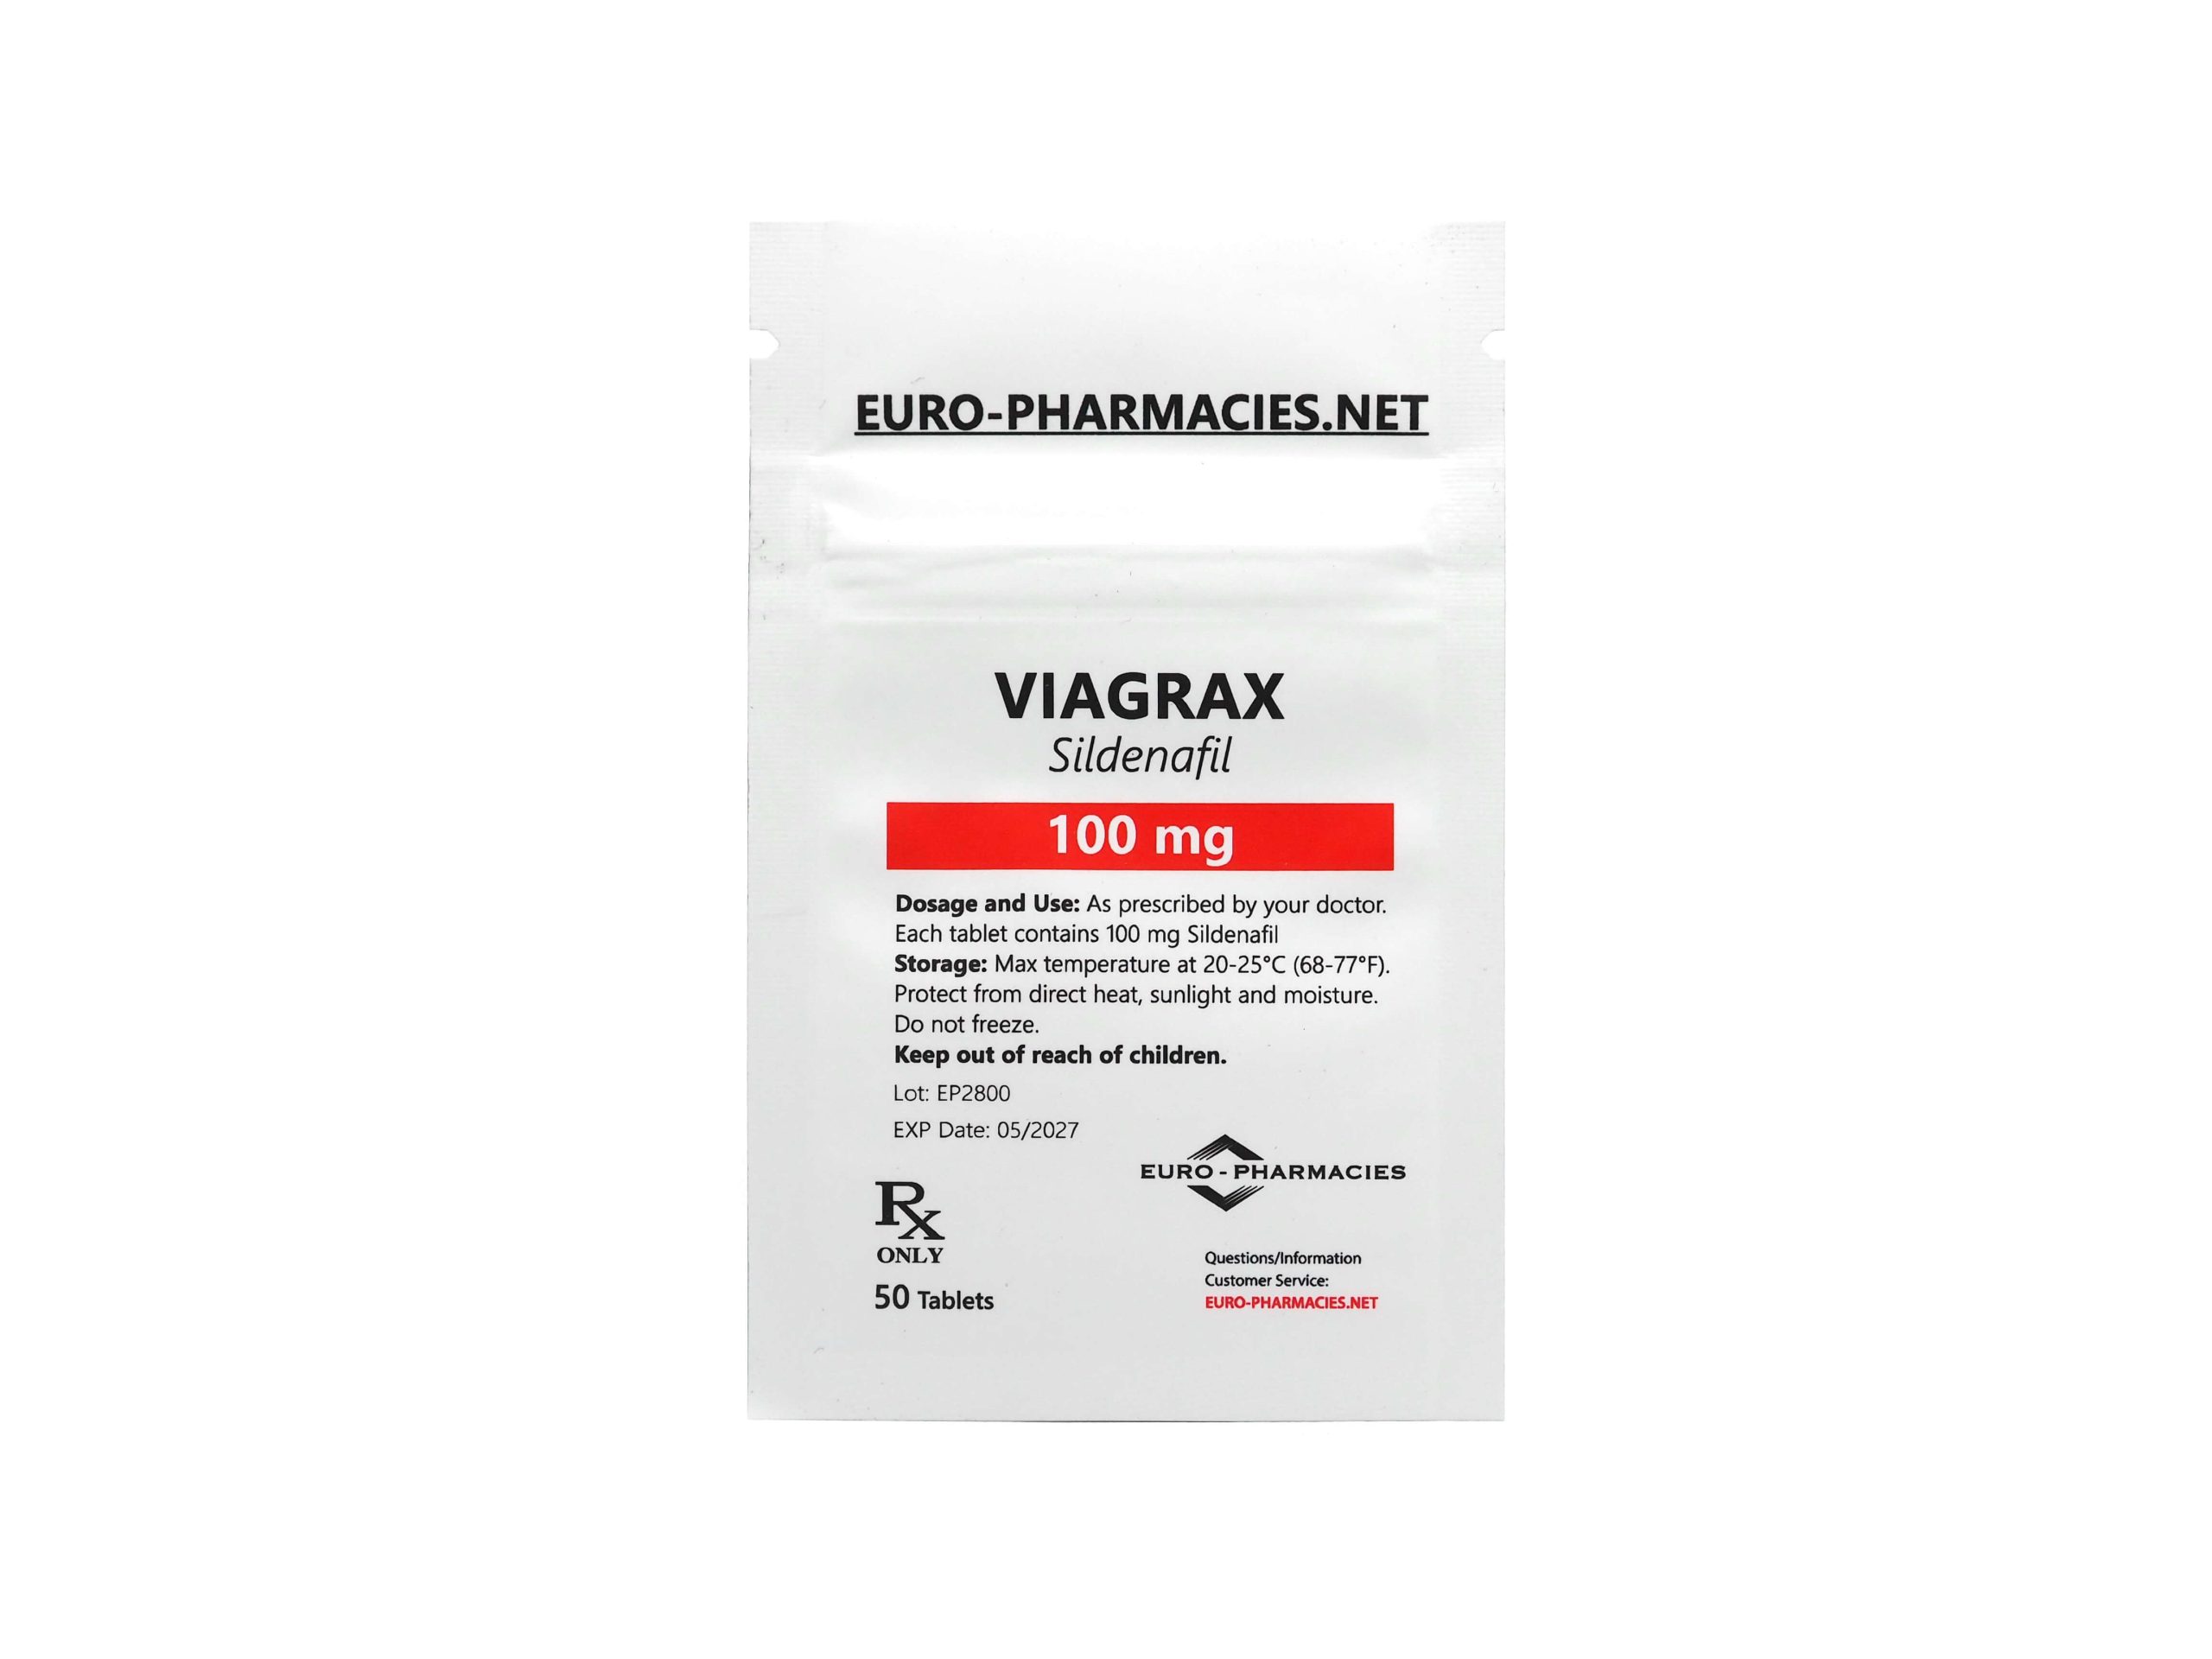 Eurofarmacias Bolsa Viagrax (Sildenafil)